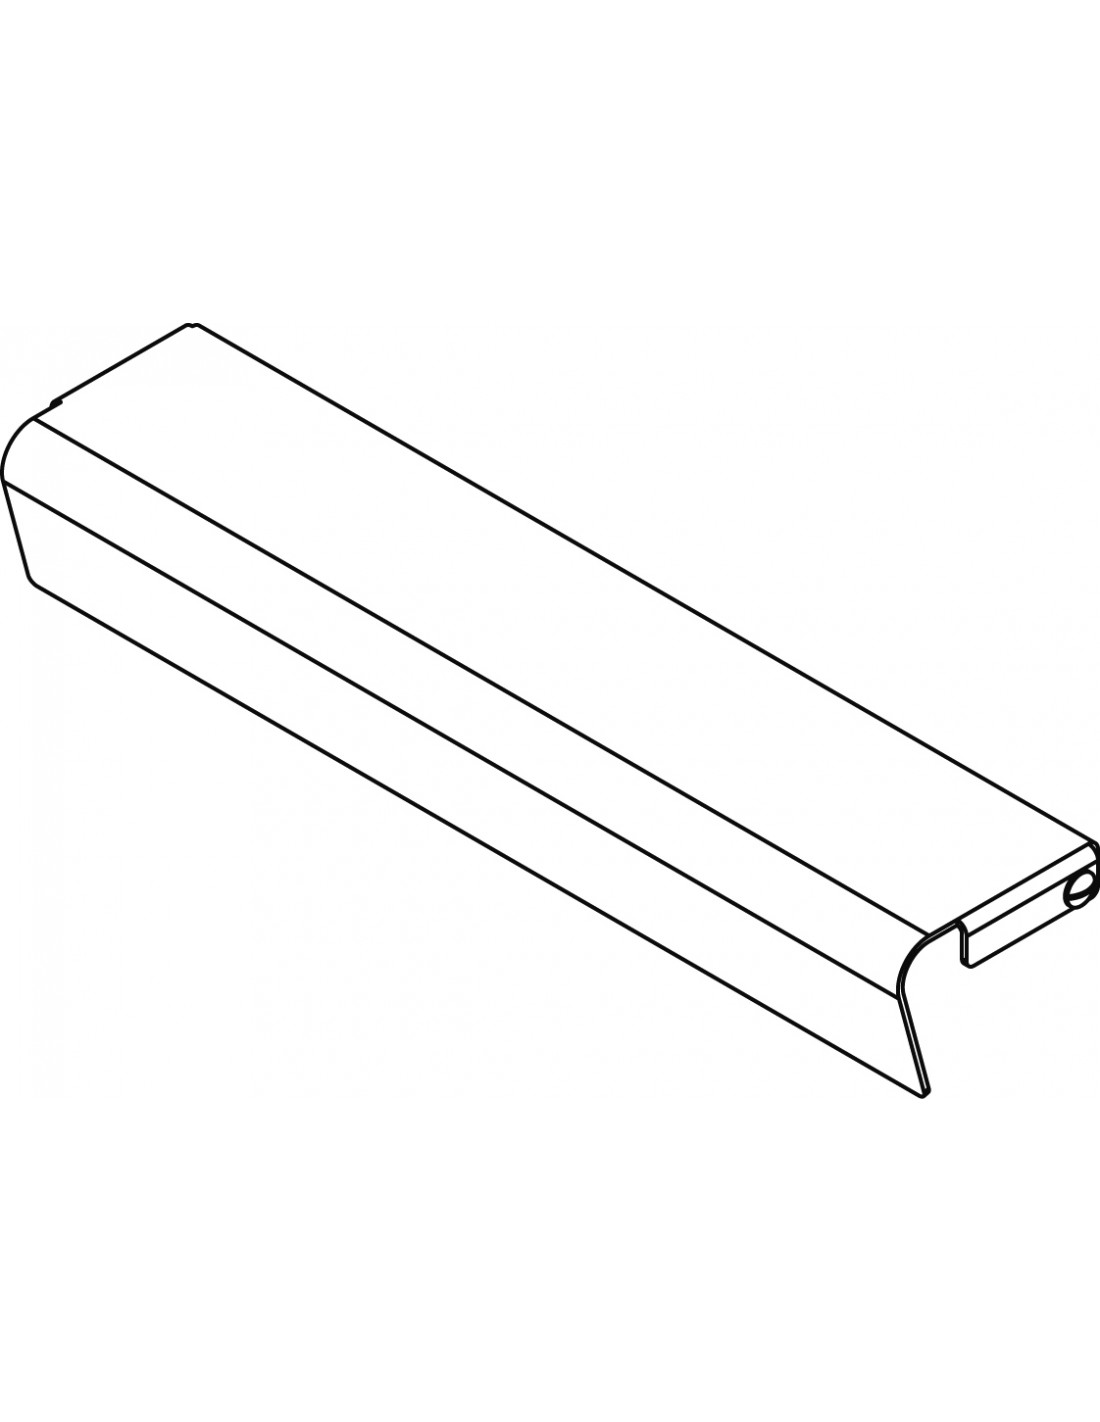 Kit de protección frontal Fry-top - Dimensiones cm. 58x 8x 6h